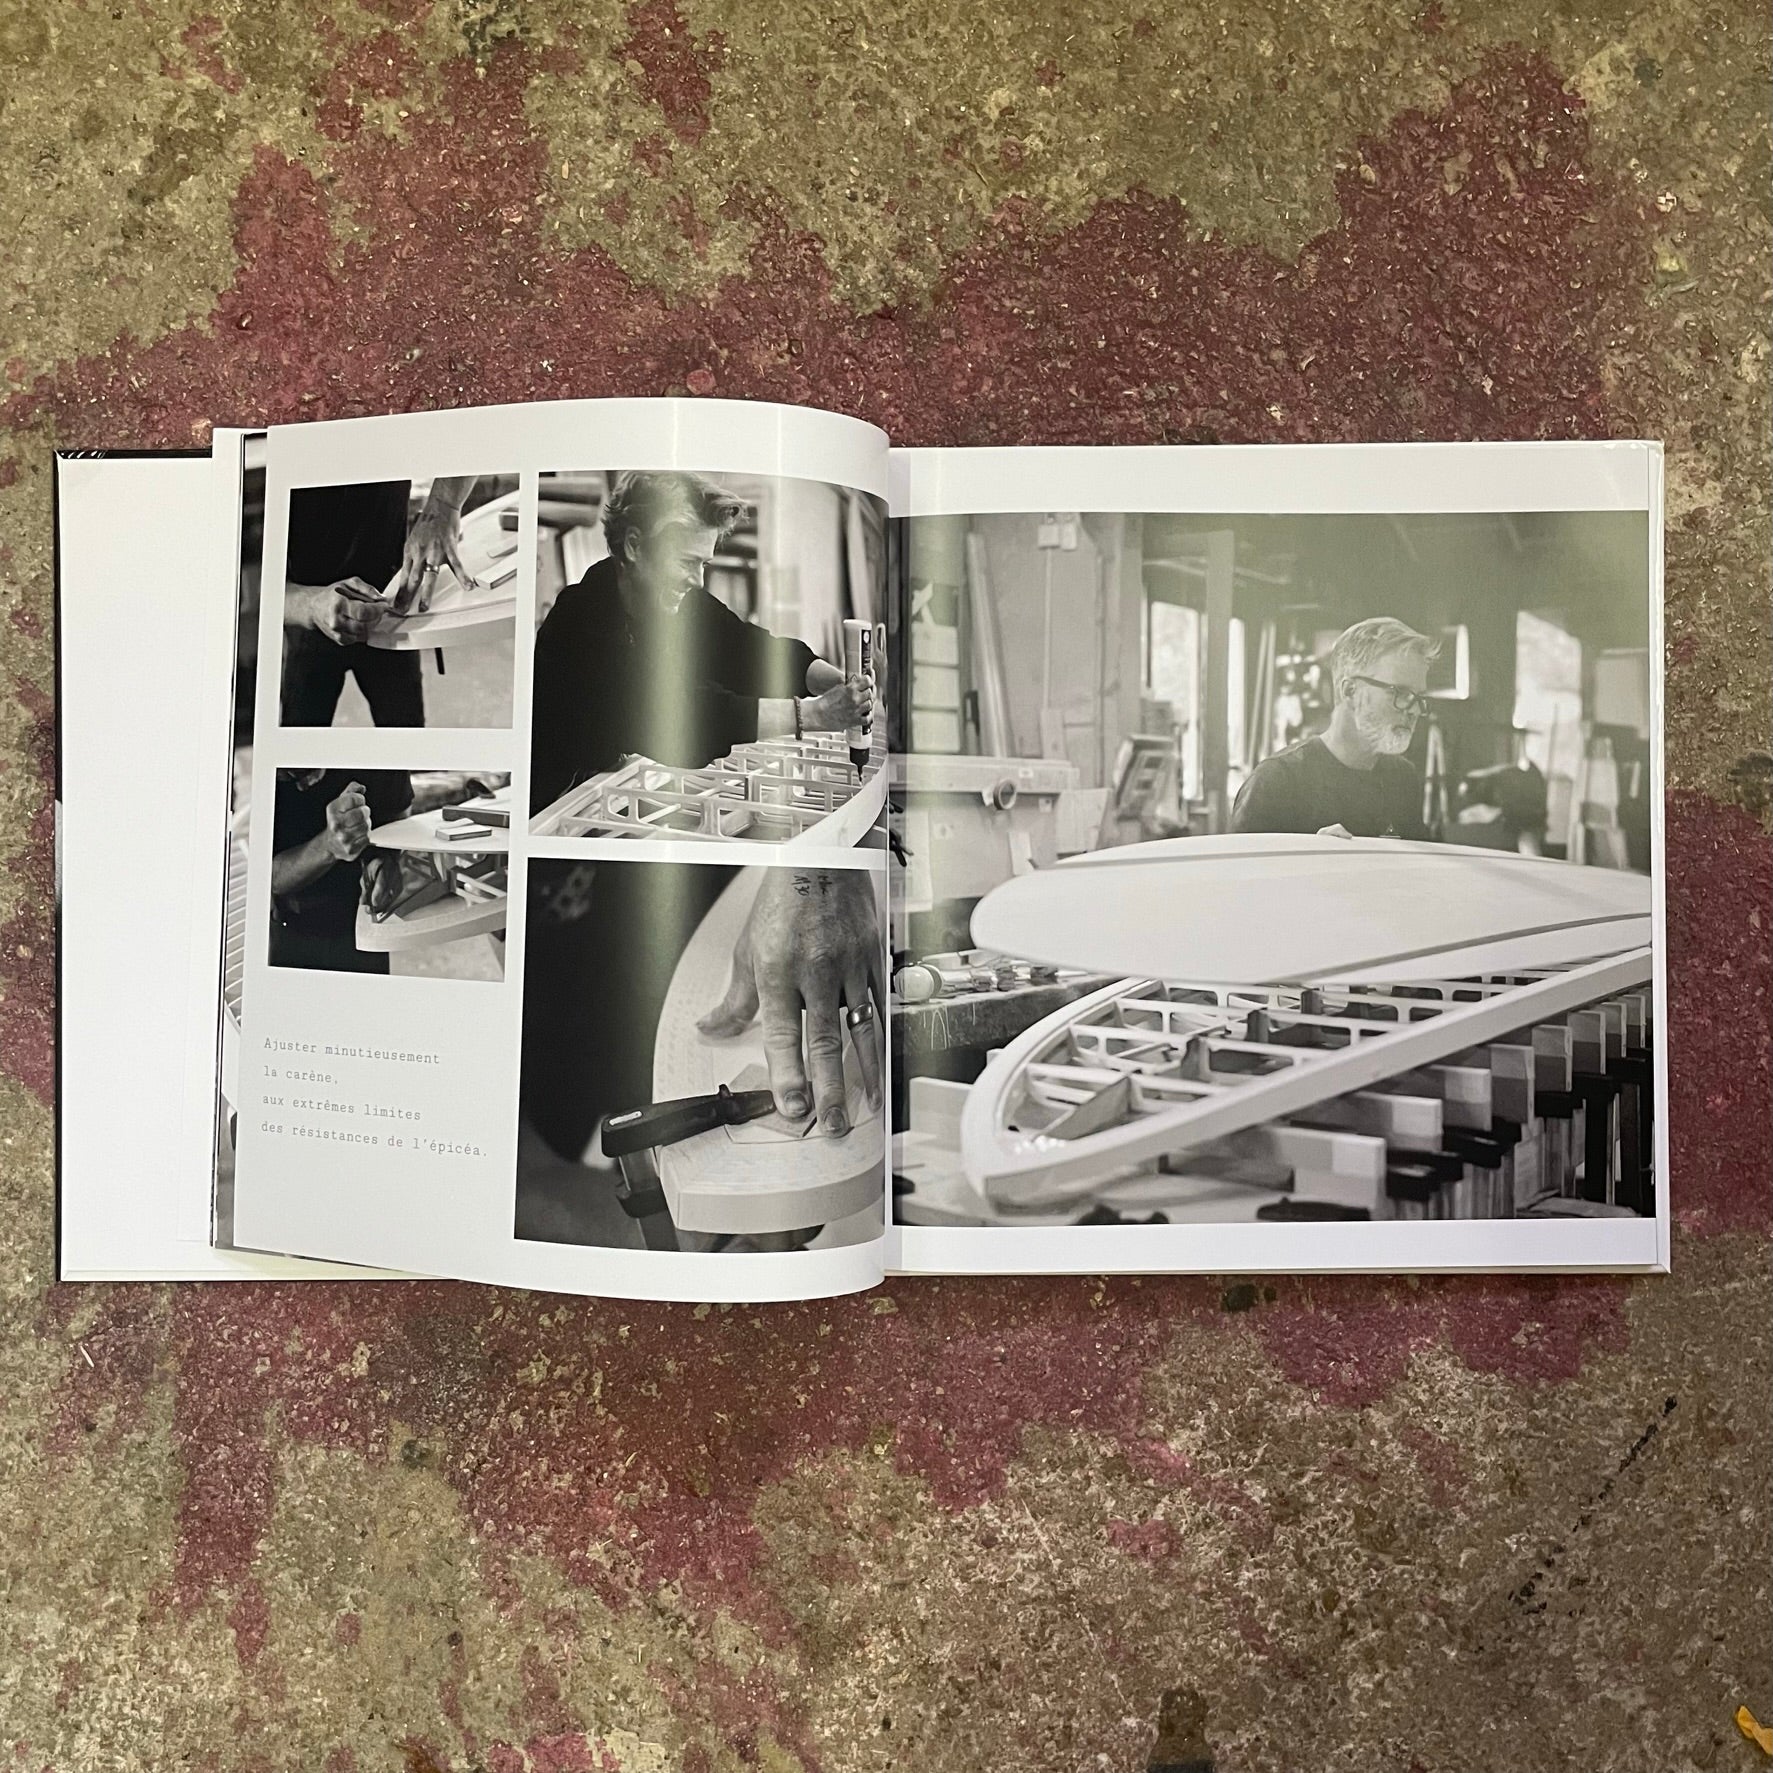 Book "LGS - Art of Slide" - photograpies